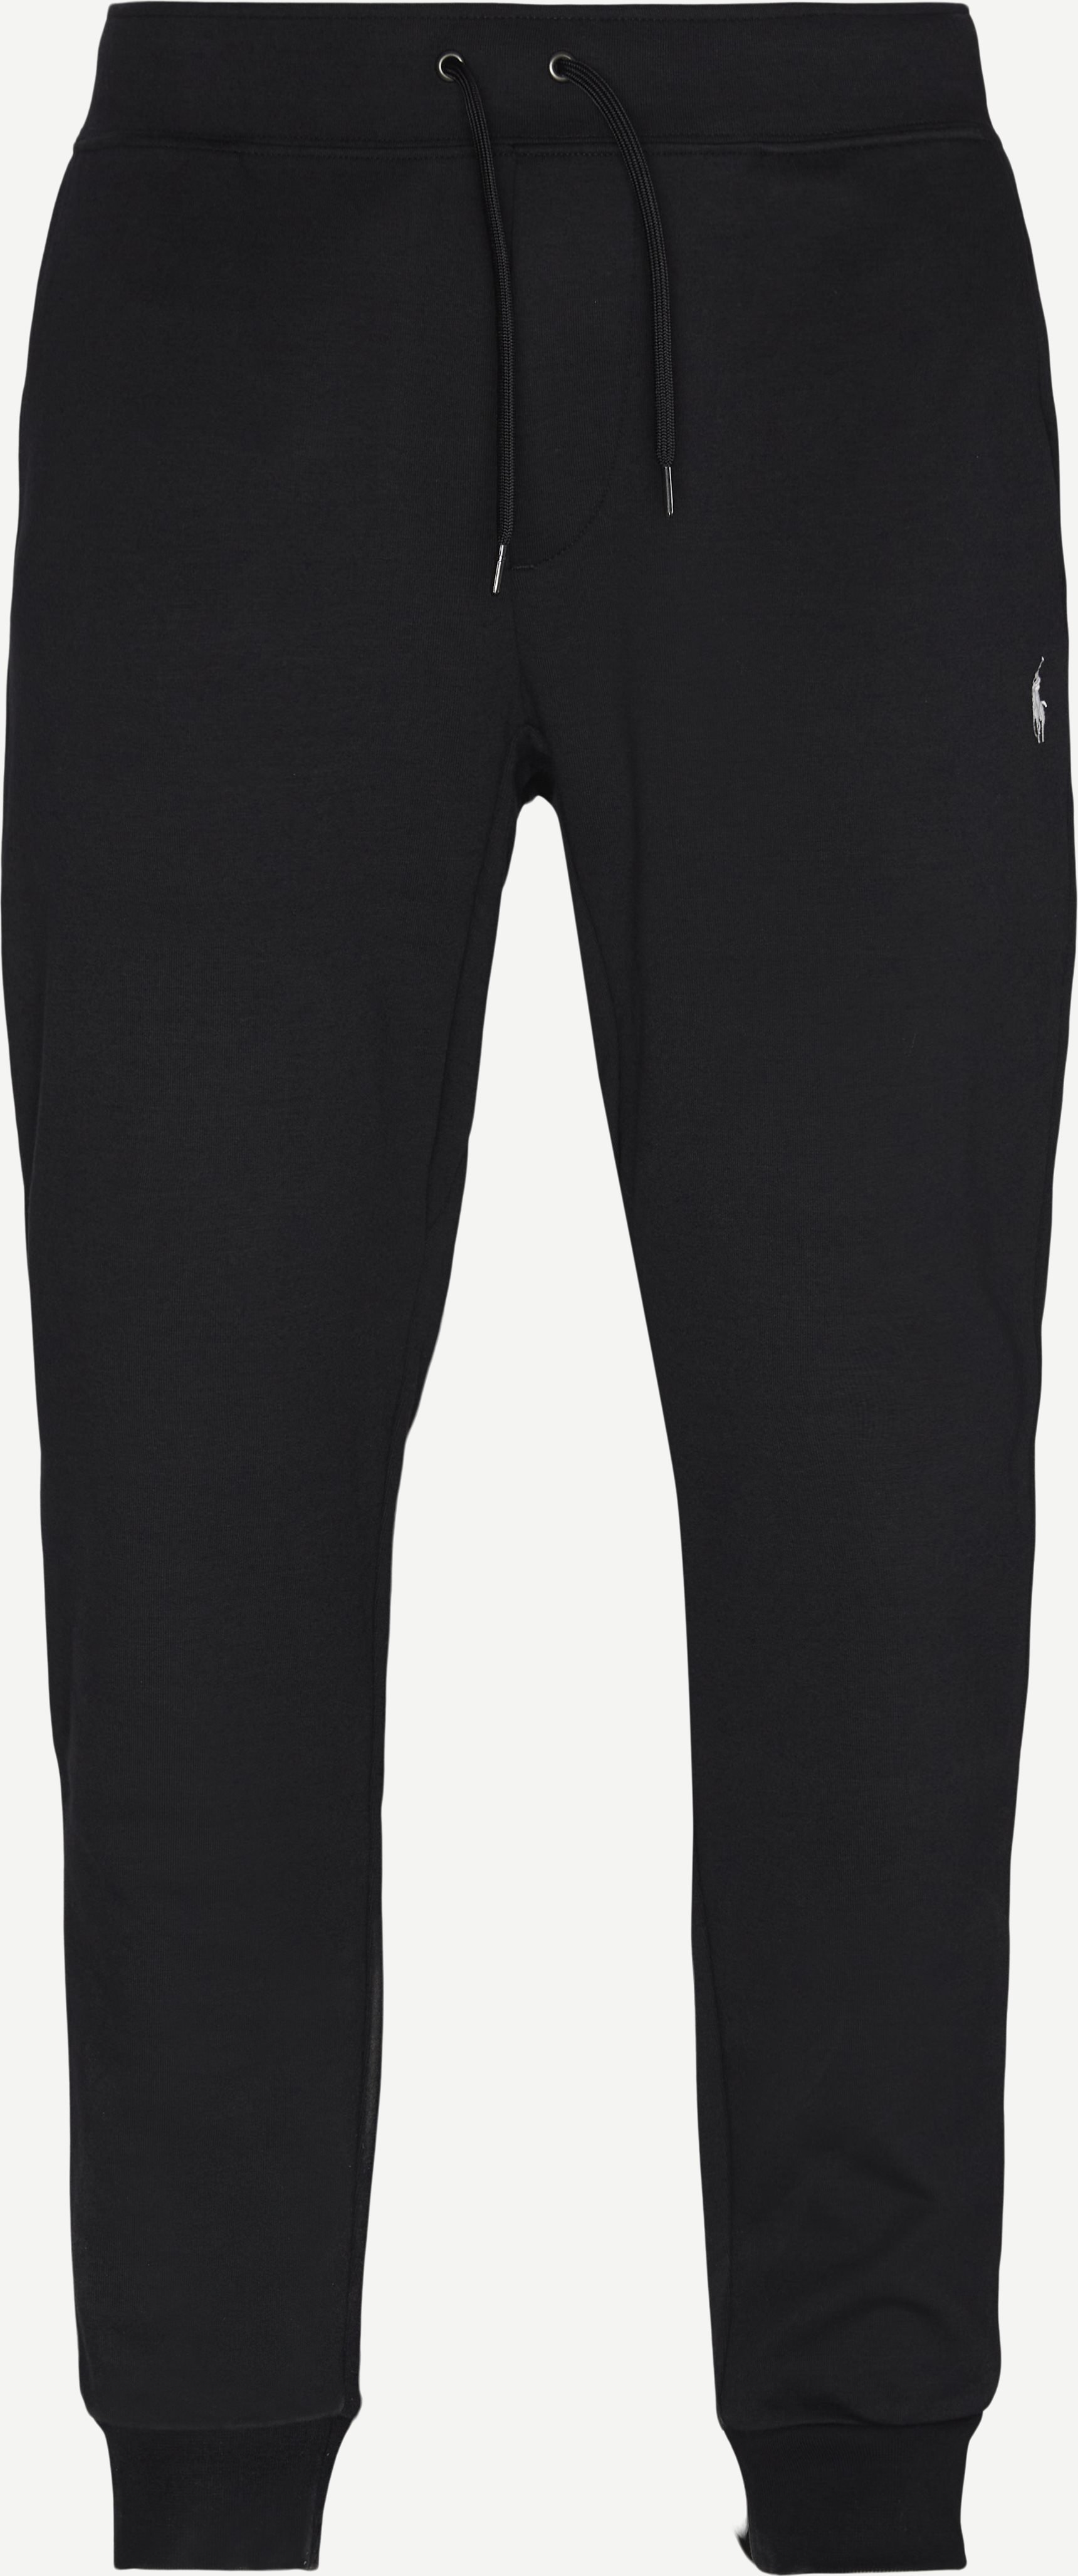 Polo Sweatpant - Bukser - Regular fit - Sort